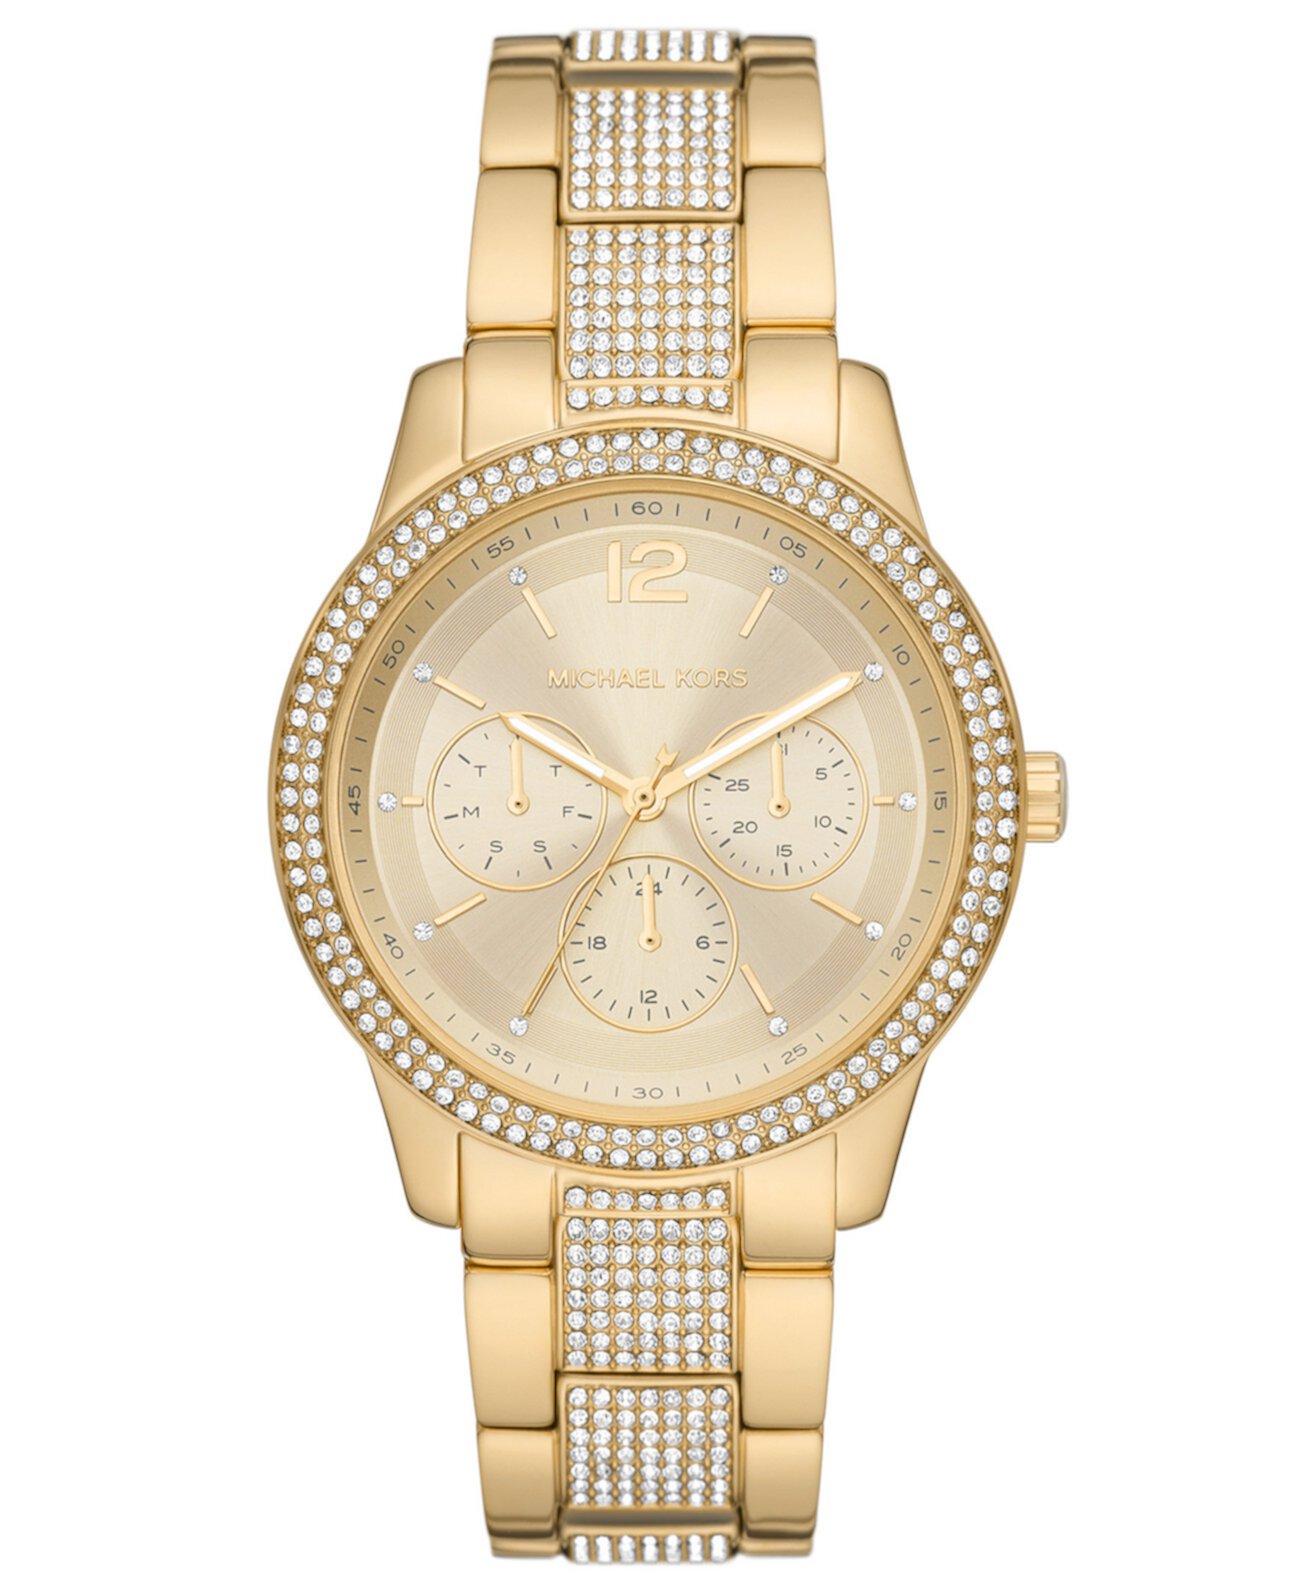 Женские многофункциональные золотые часы Tibby с ремешком из нержавеющей стали 40 мм Michael Kors